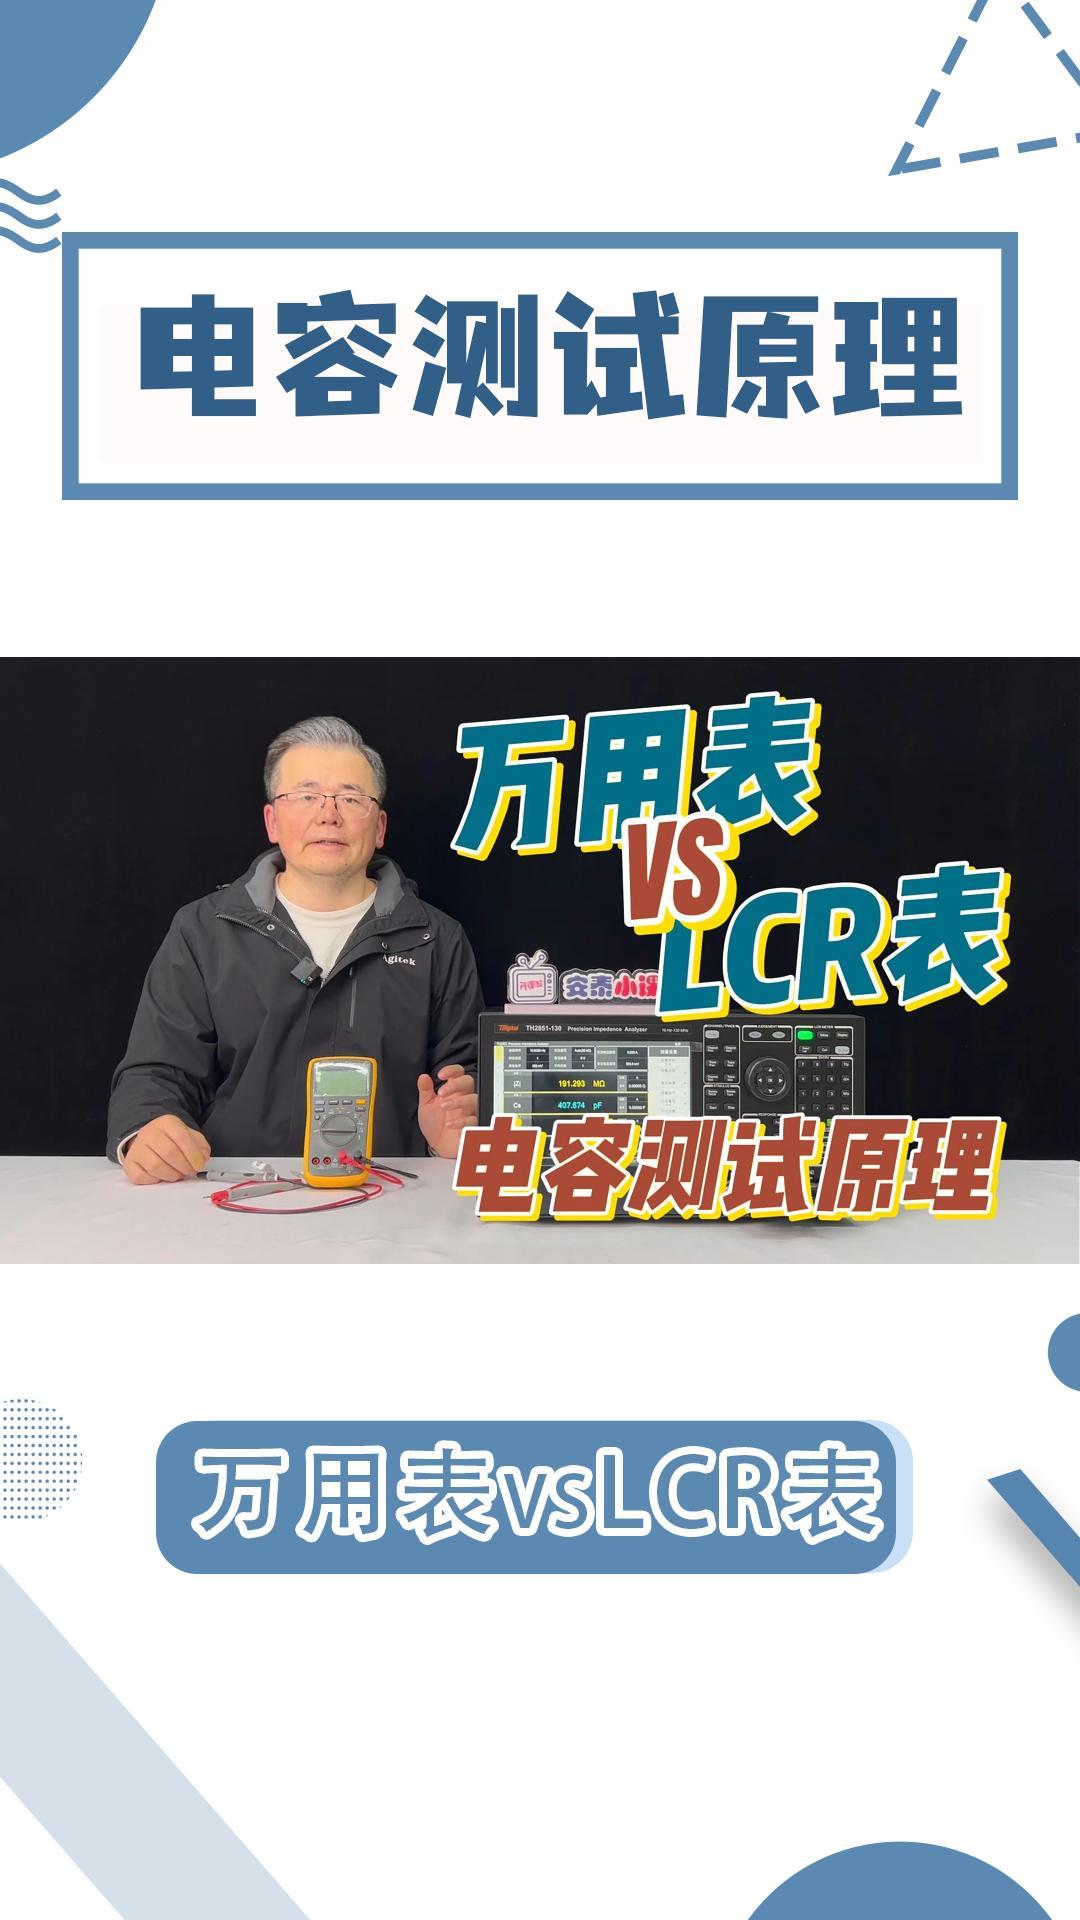 LCR测试电容不准确？万用表/LCR表电容测试原理对比#电路知识 #万用表 #LCR  #电容 